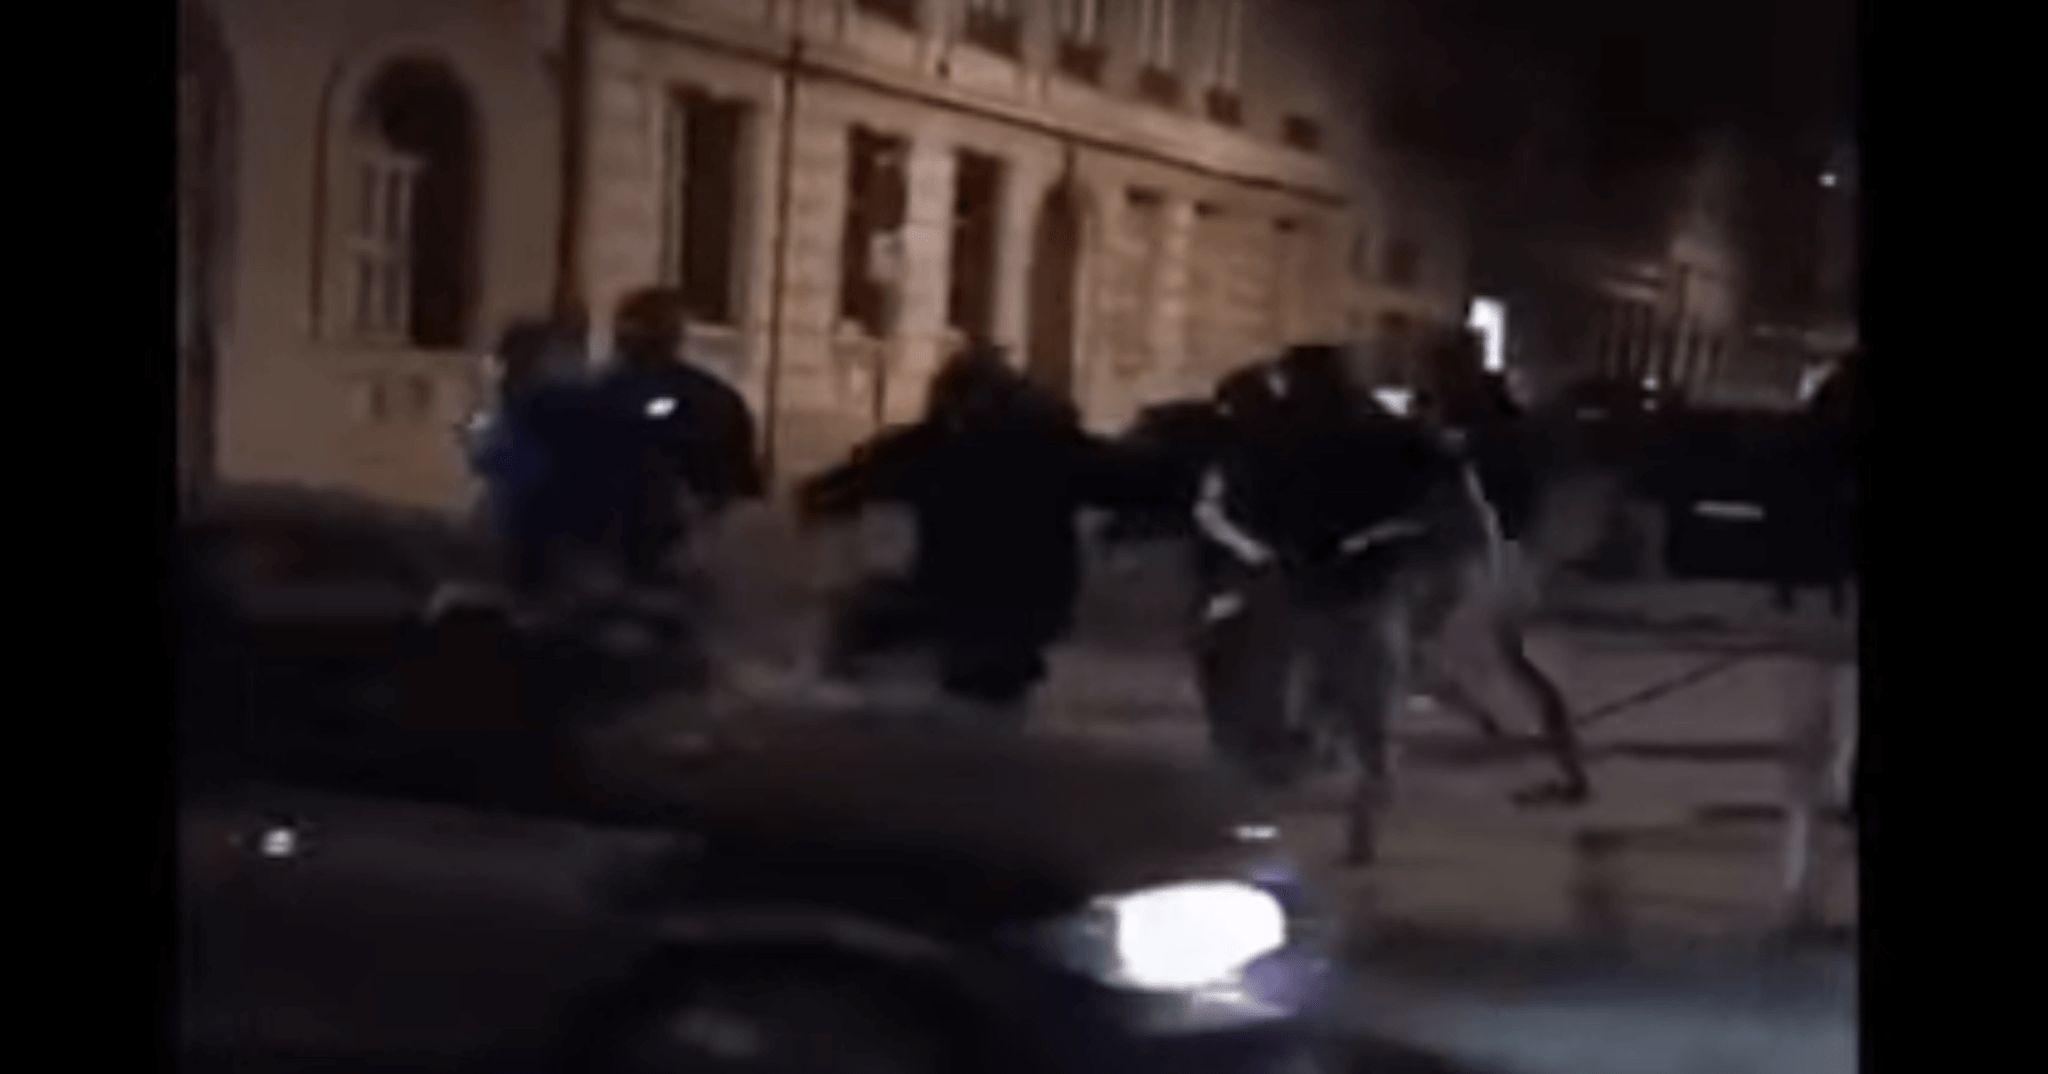 Capture d'écran de la vidéo de l'attaque de l'extrême droite sur des supporters algériens à Lyon en 2019